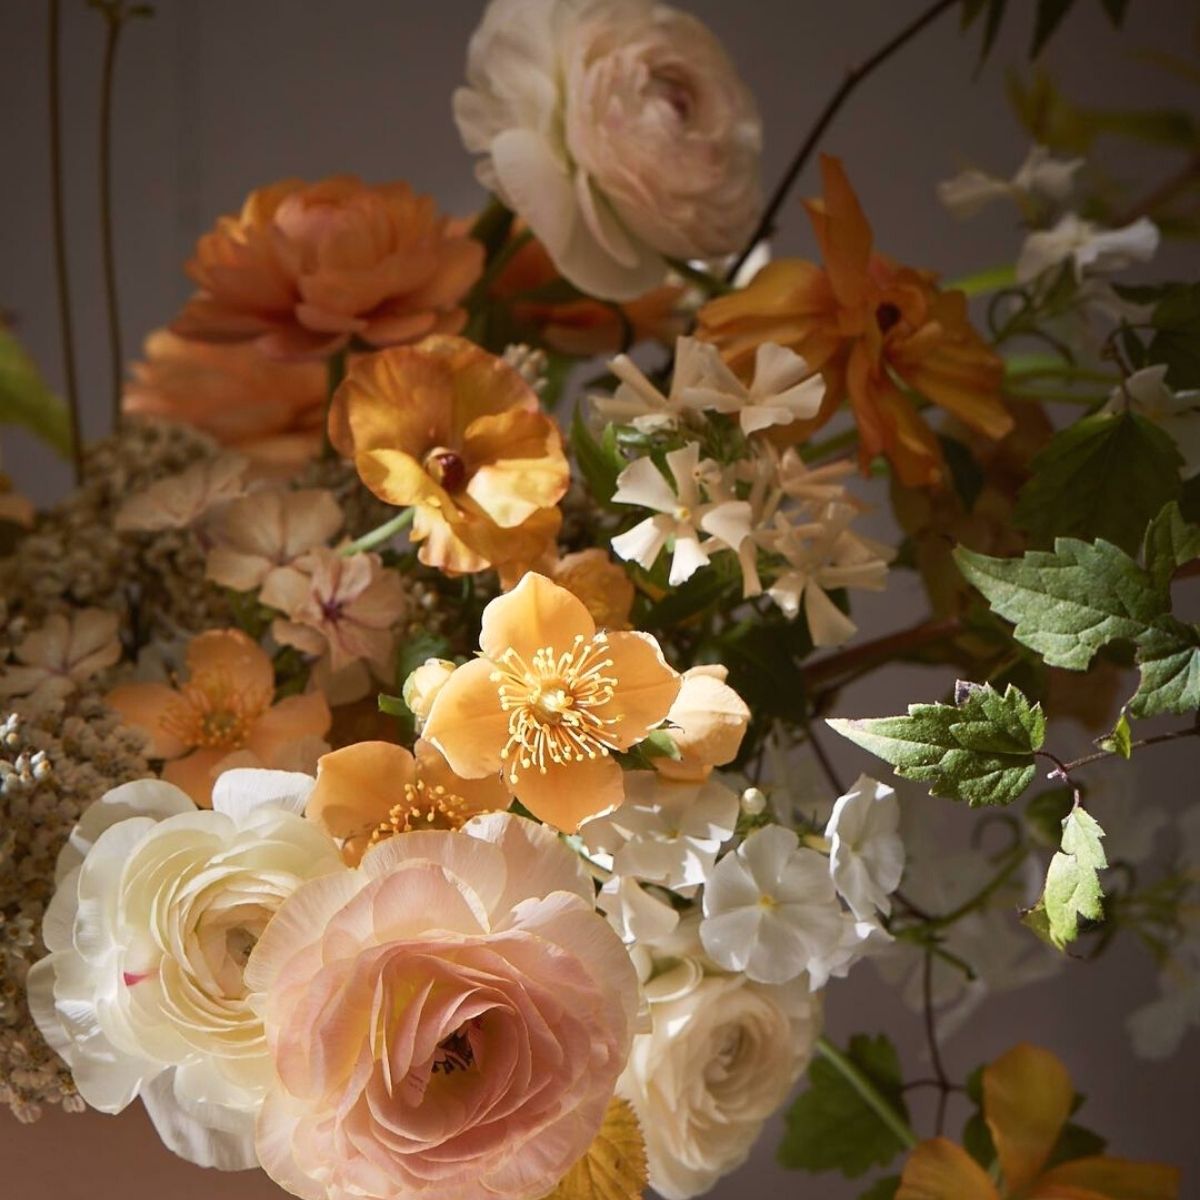 La Musa de Las Flores wedding floral arrangements on Thursd